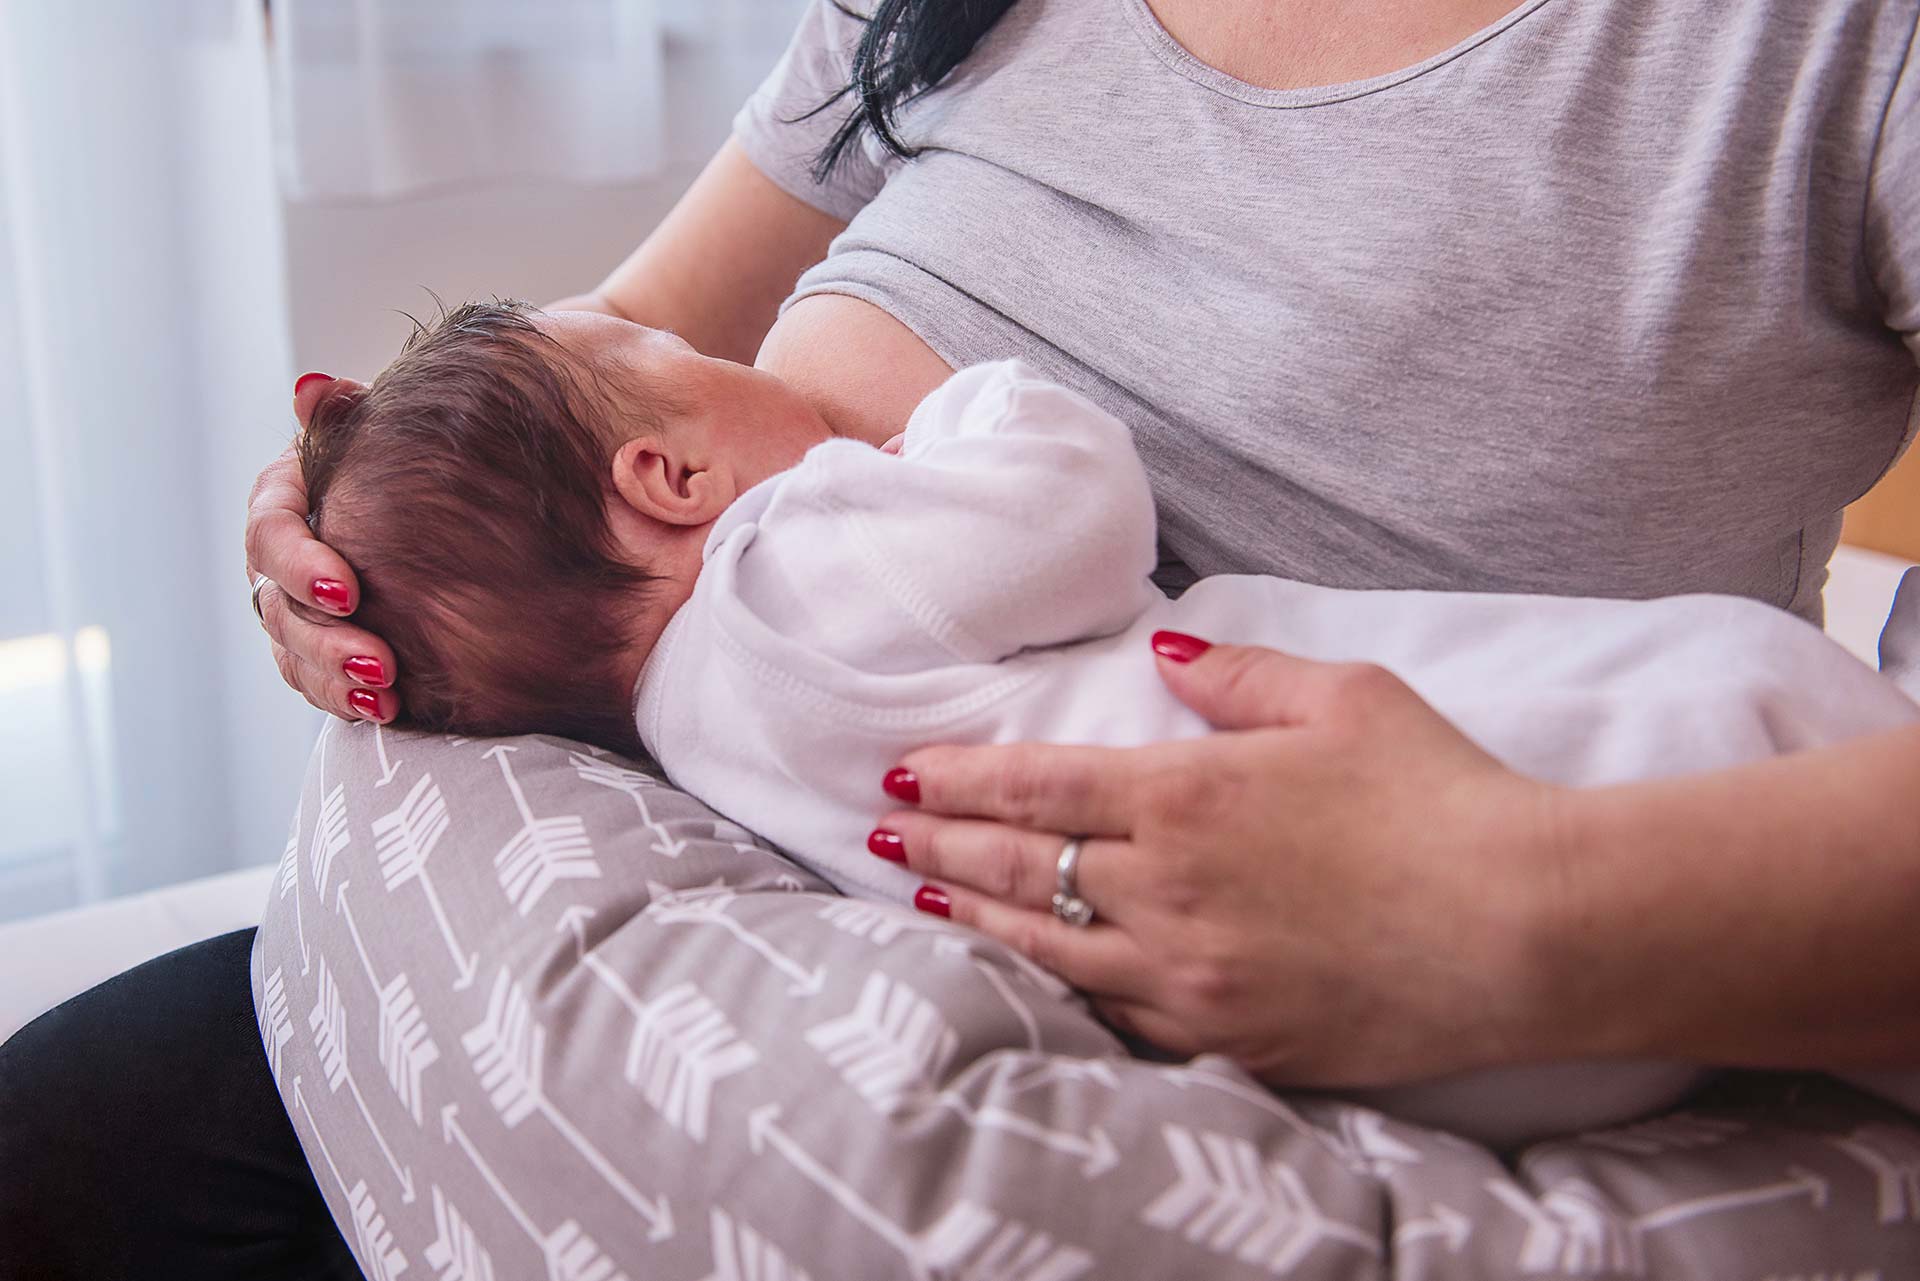 Cuscino per allattamento: vantaggi e come usarlo